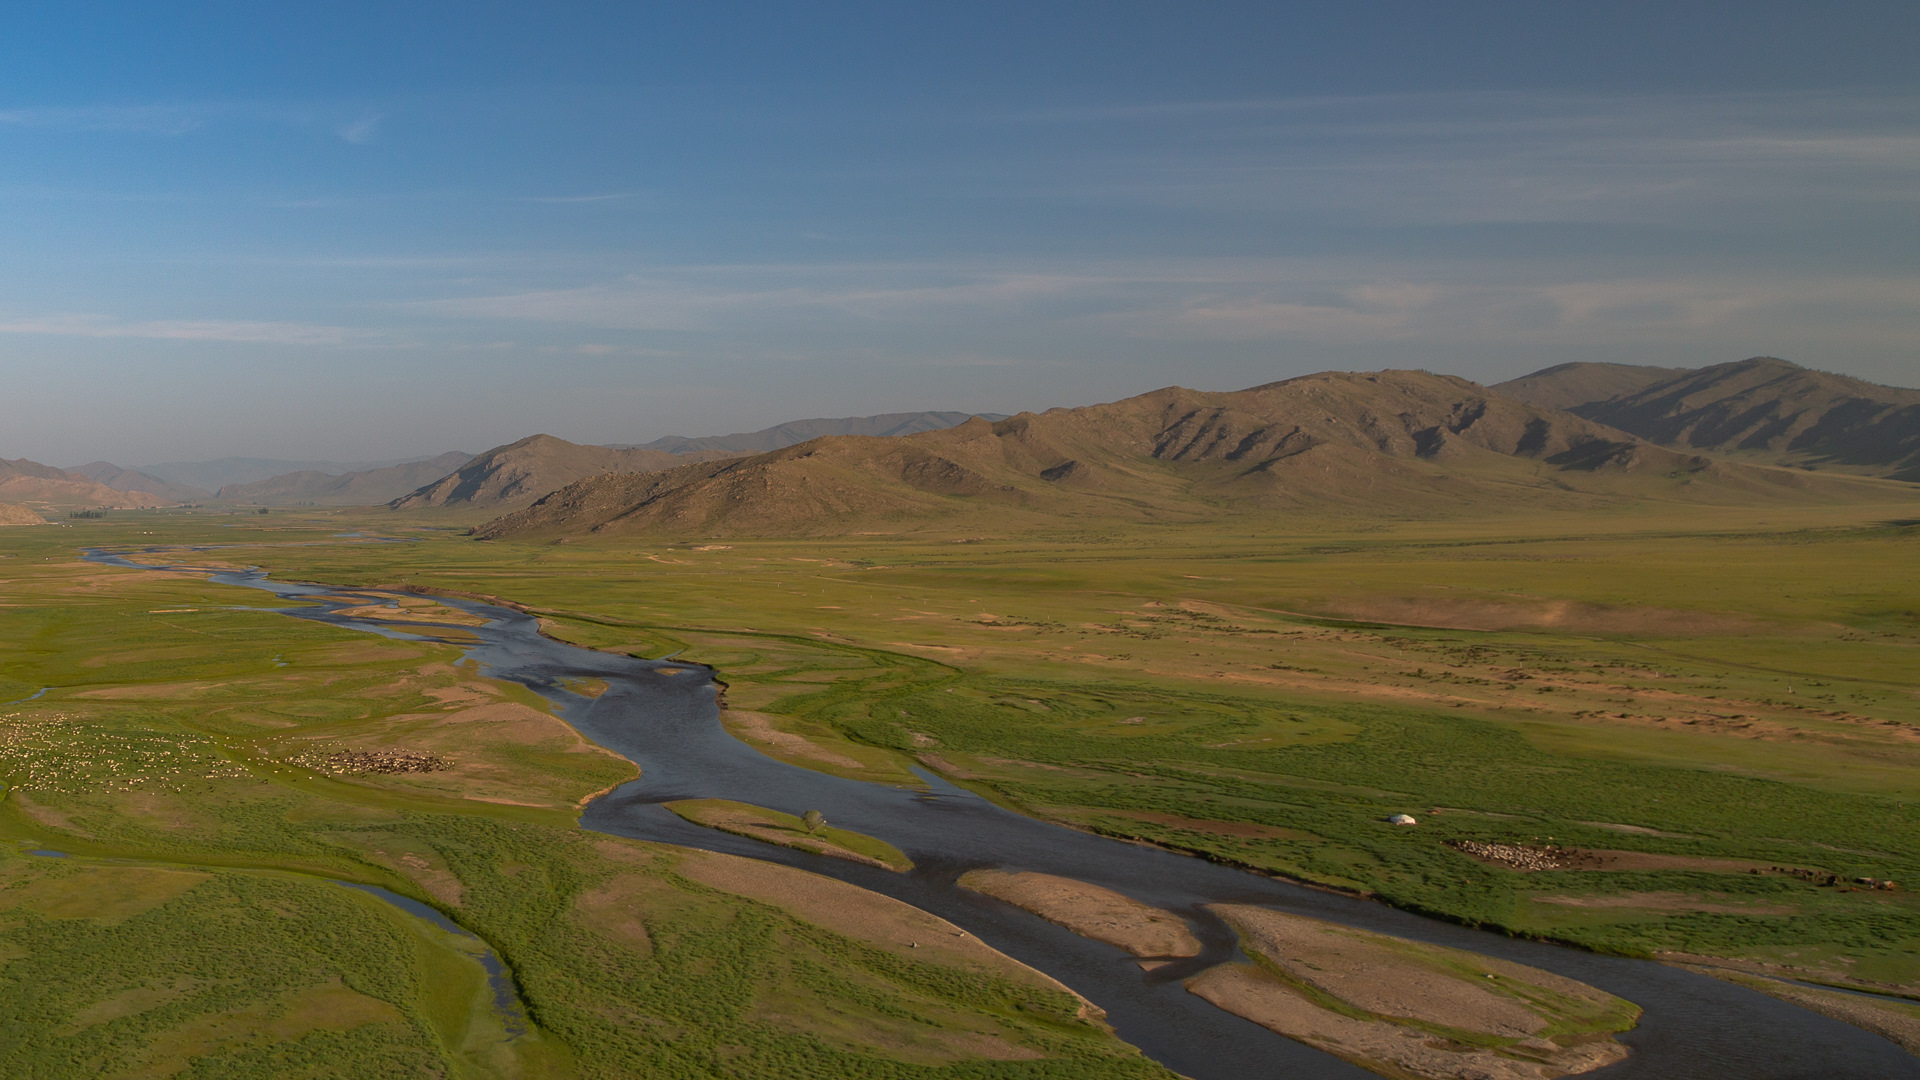 Реки монголии